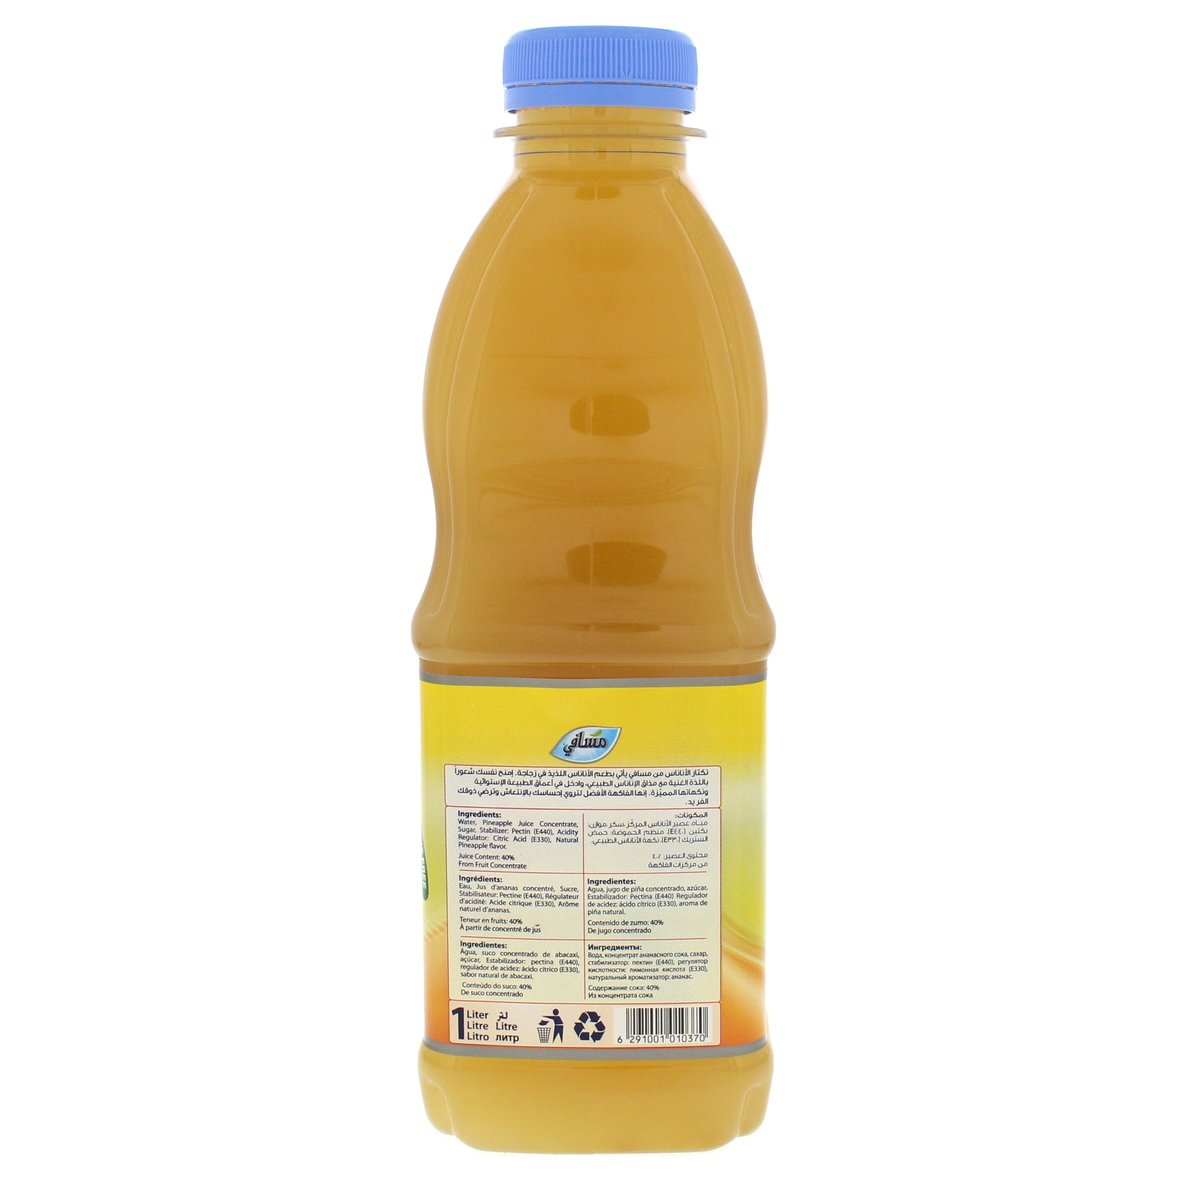 Masafi Pineapple Juice 1 Litre